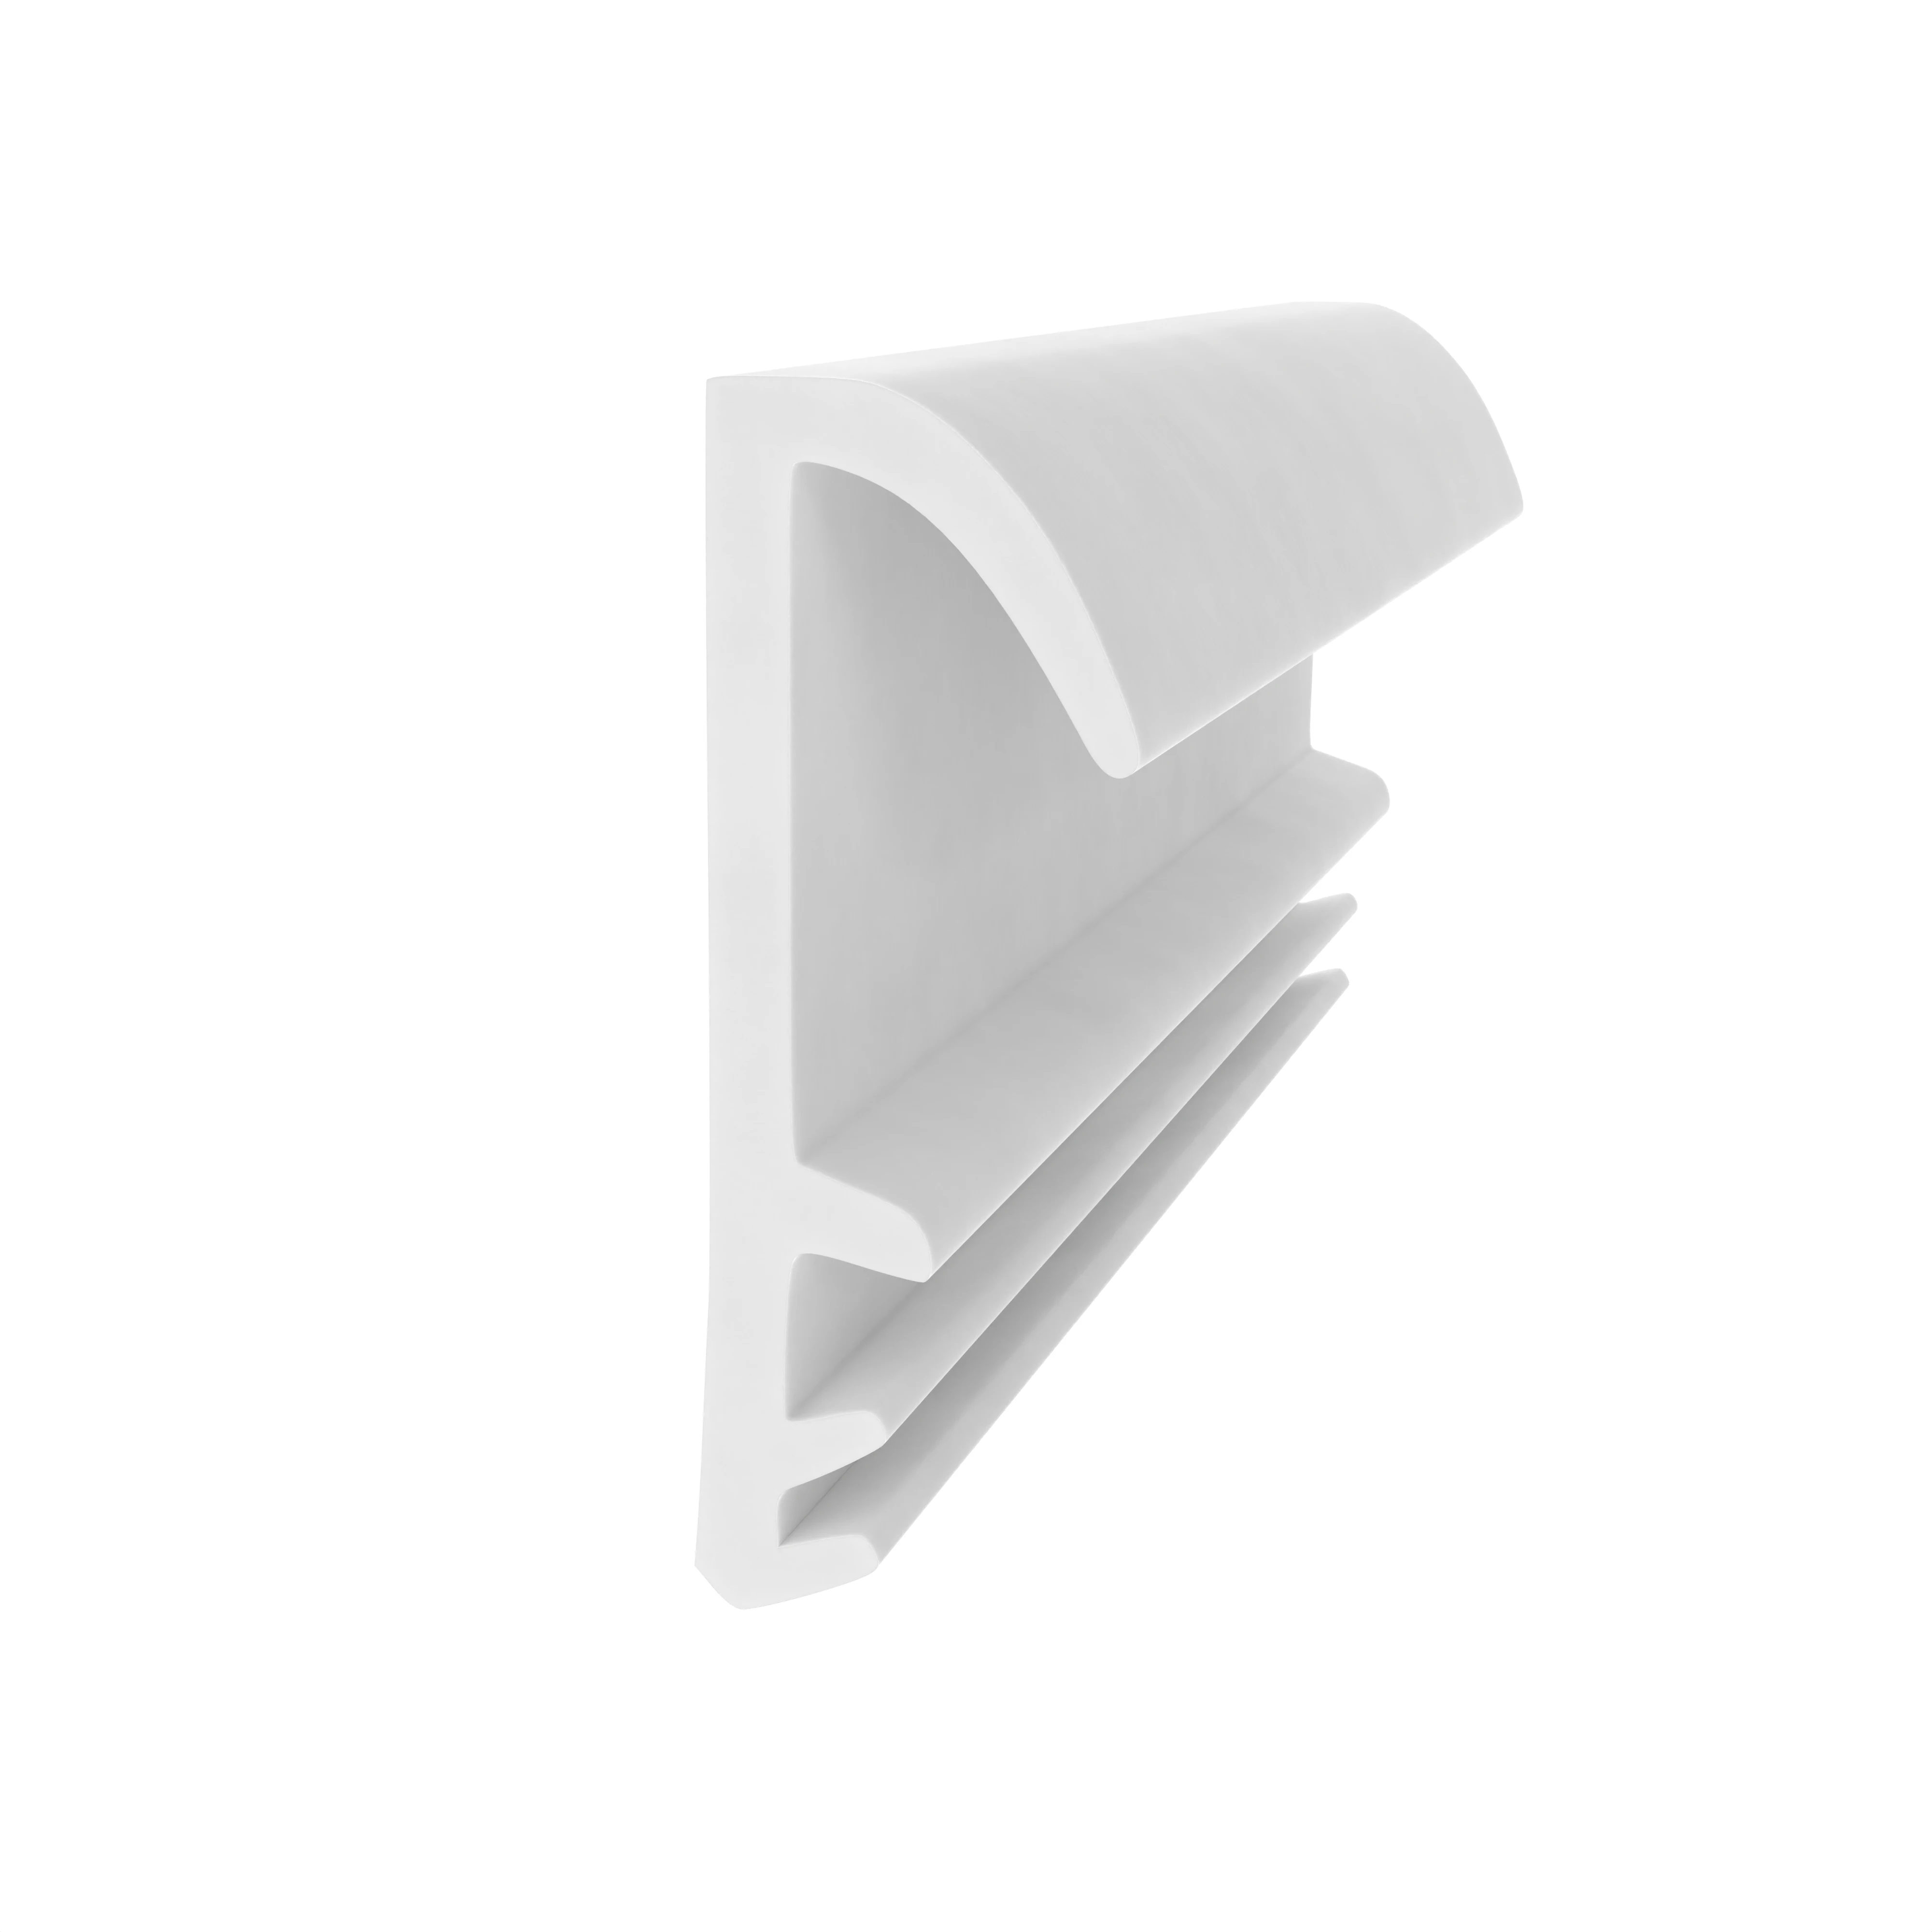 Flügelfalzdichtung für Holzfenster und -türen | 15 mm Falzhöhe | Farbe: weiß